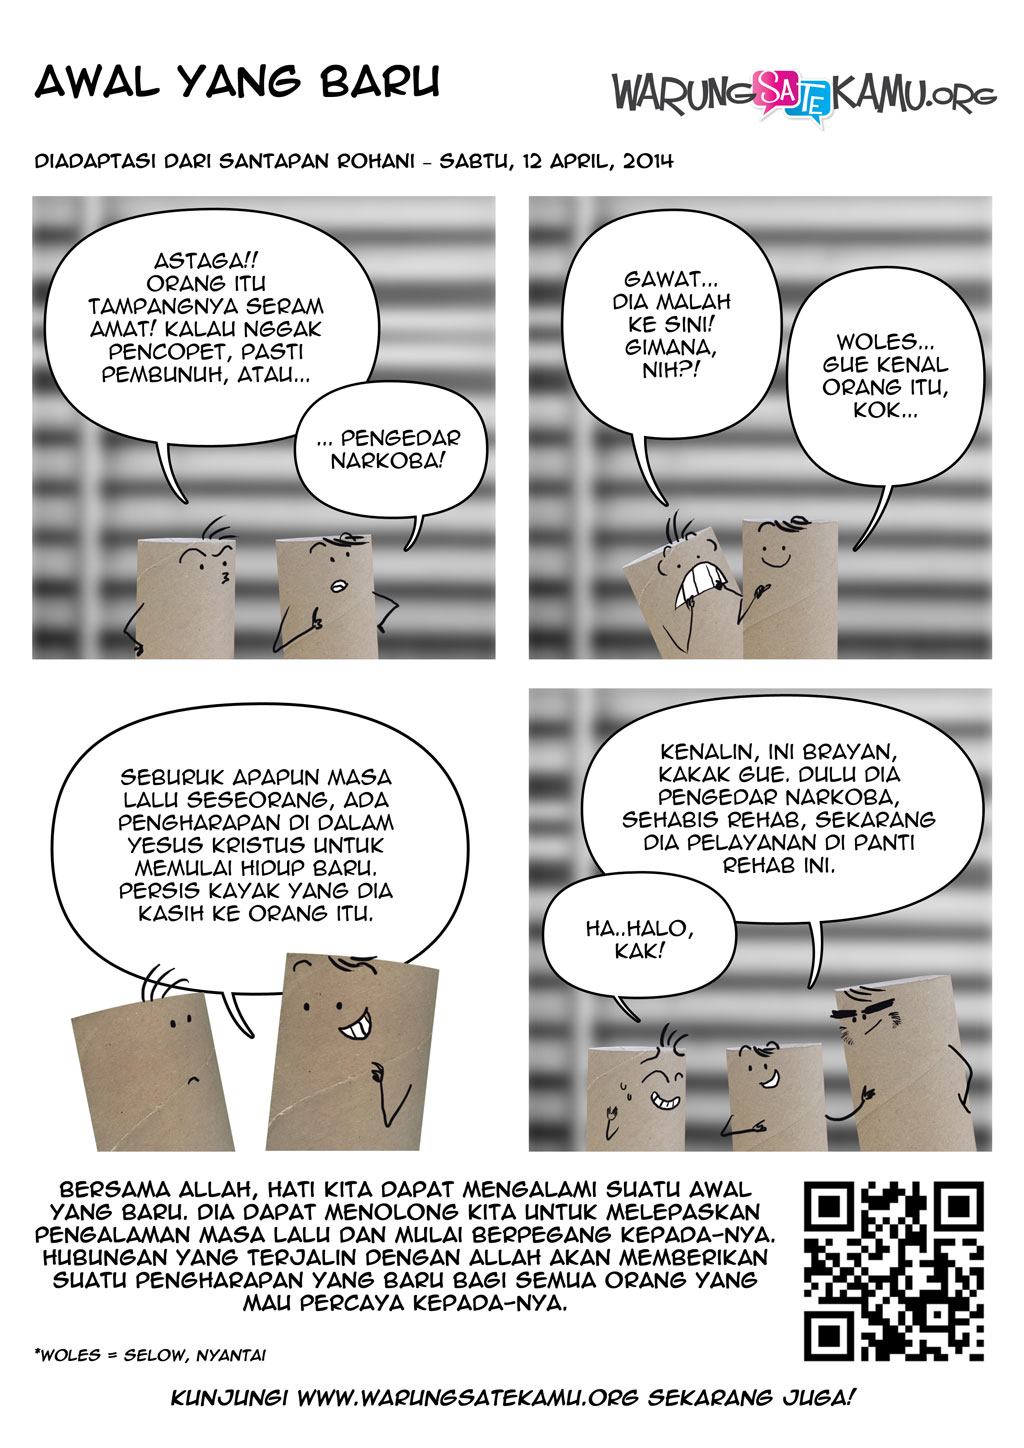 Komik-Strip-WarungSateKamu-20140412-Awal-yang-Baru